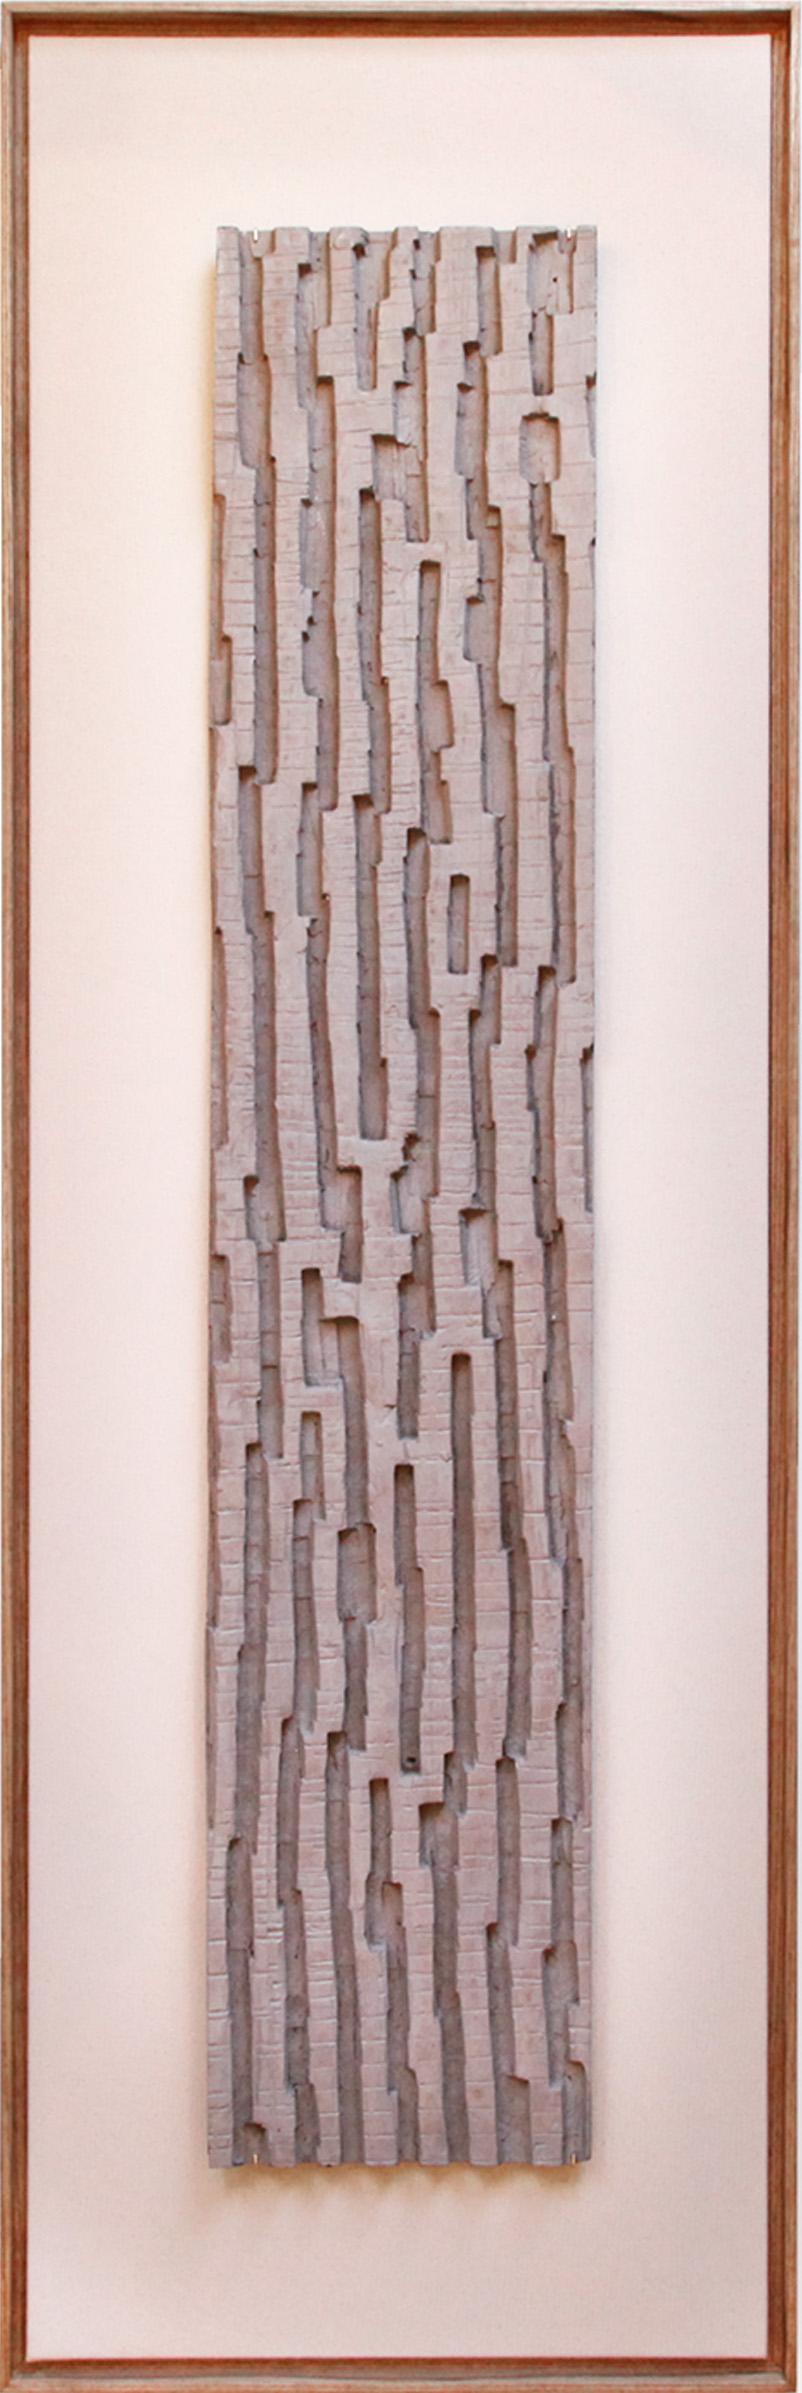 Eine auffallende und völlig einzigartige abstrakte Glasfaserskulptur aus dem Haus des Künstlers.

Jahr: unbekannt (Ron war von Mitte der 1960er bis Anfang der 2000er Jahre aktiv)
Farbe: Beton
Gerahmte Größe: 42cm x 129cm
Einrahmung: Auf